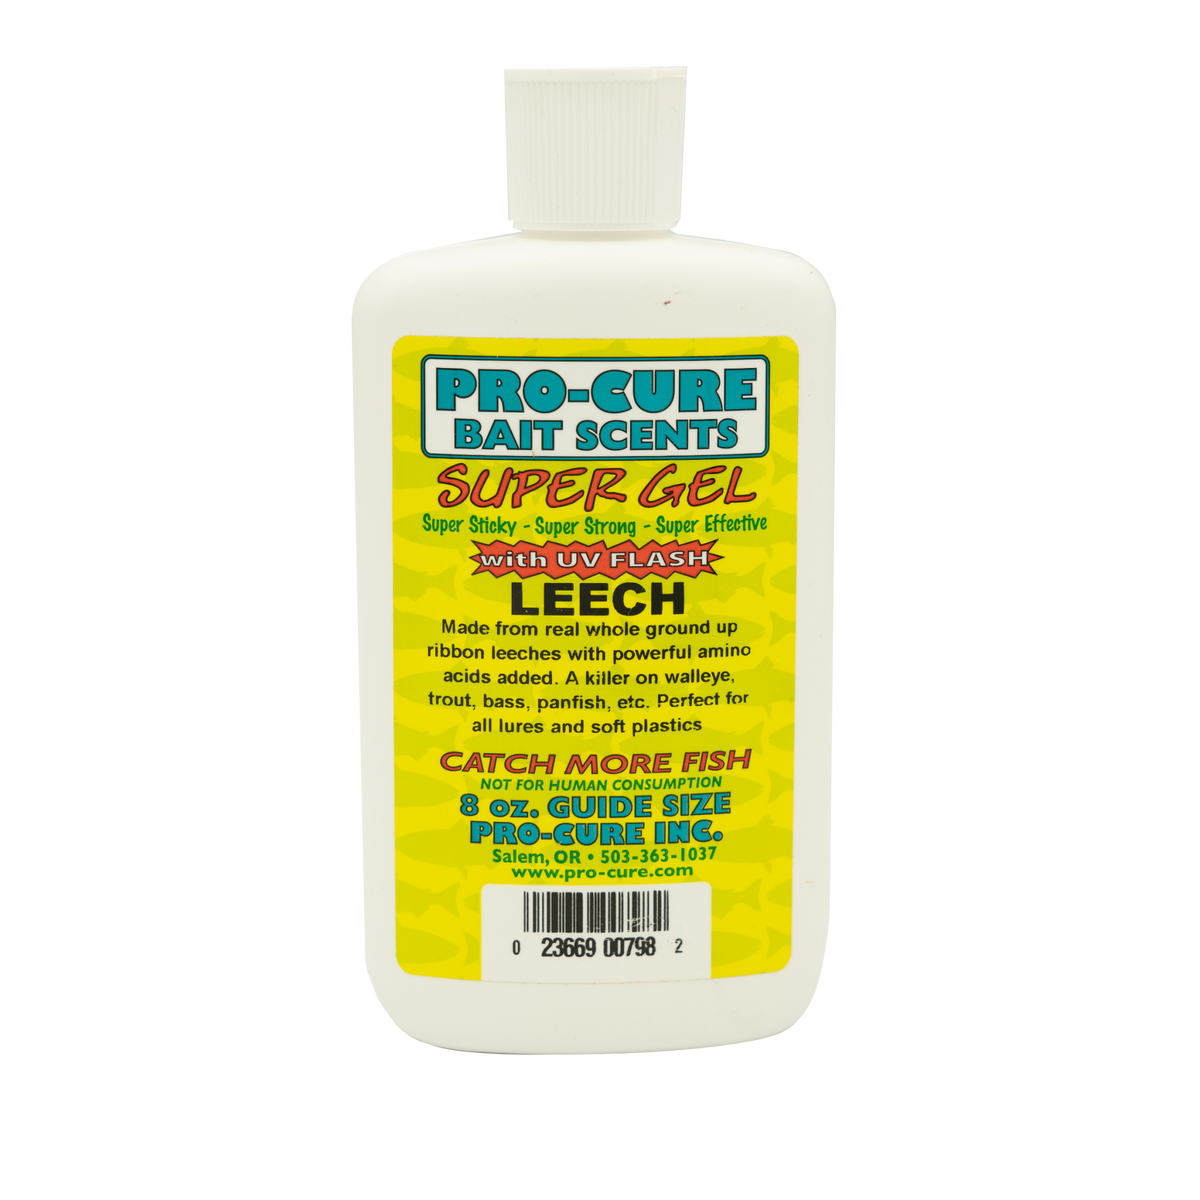 LEECH SUPER GEL – Pro-Cure, Inc